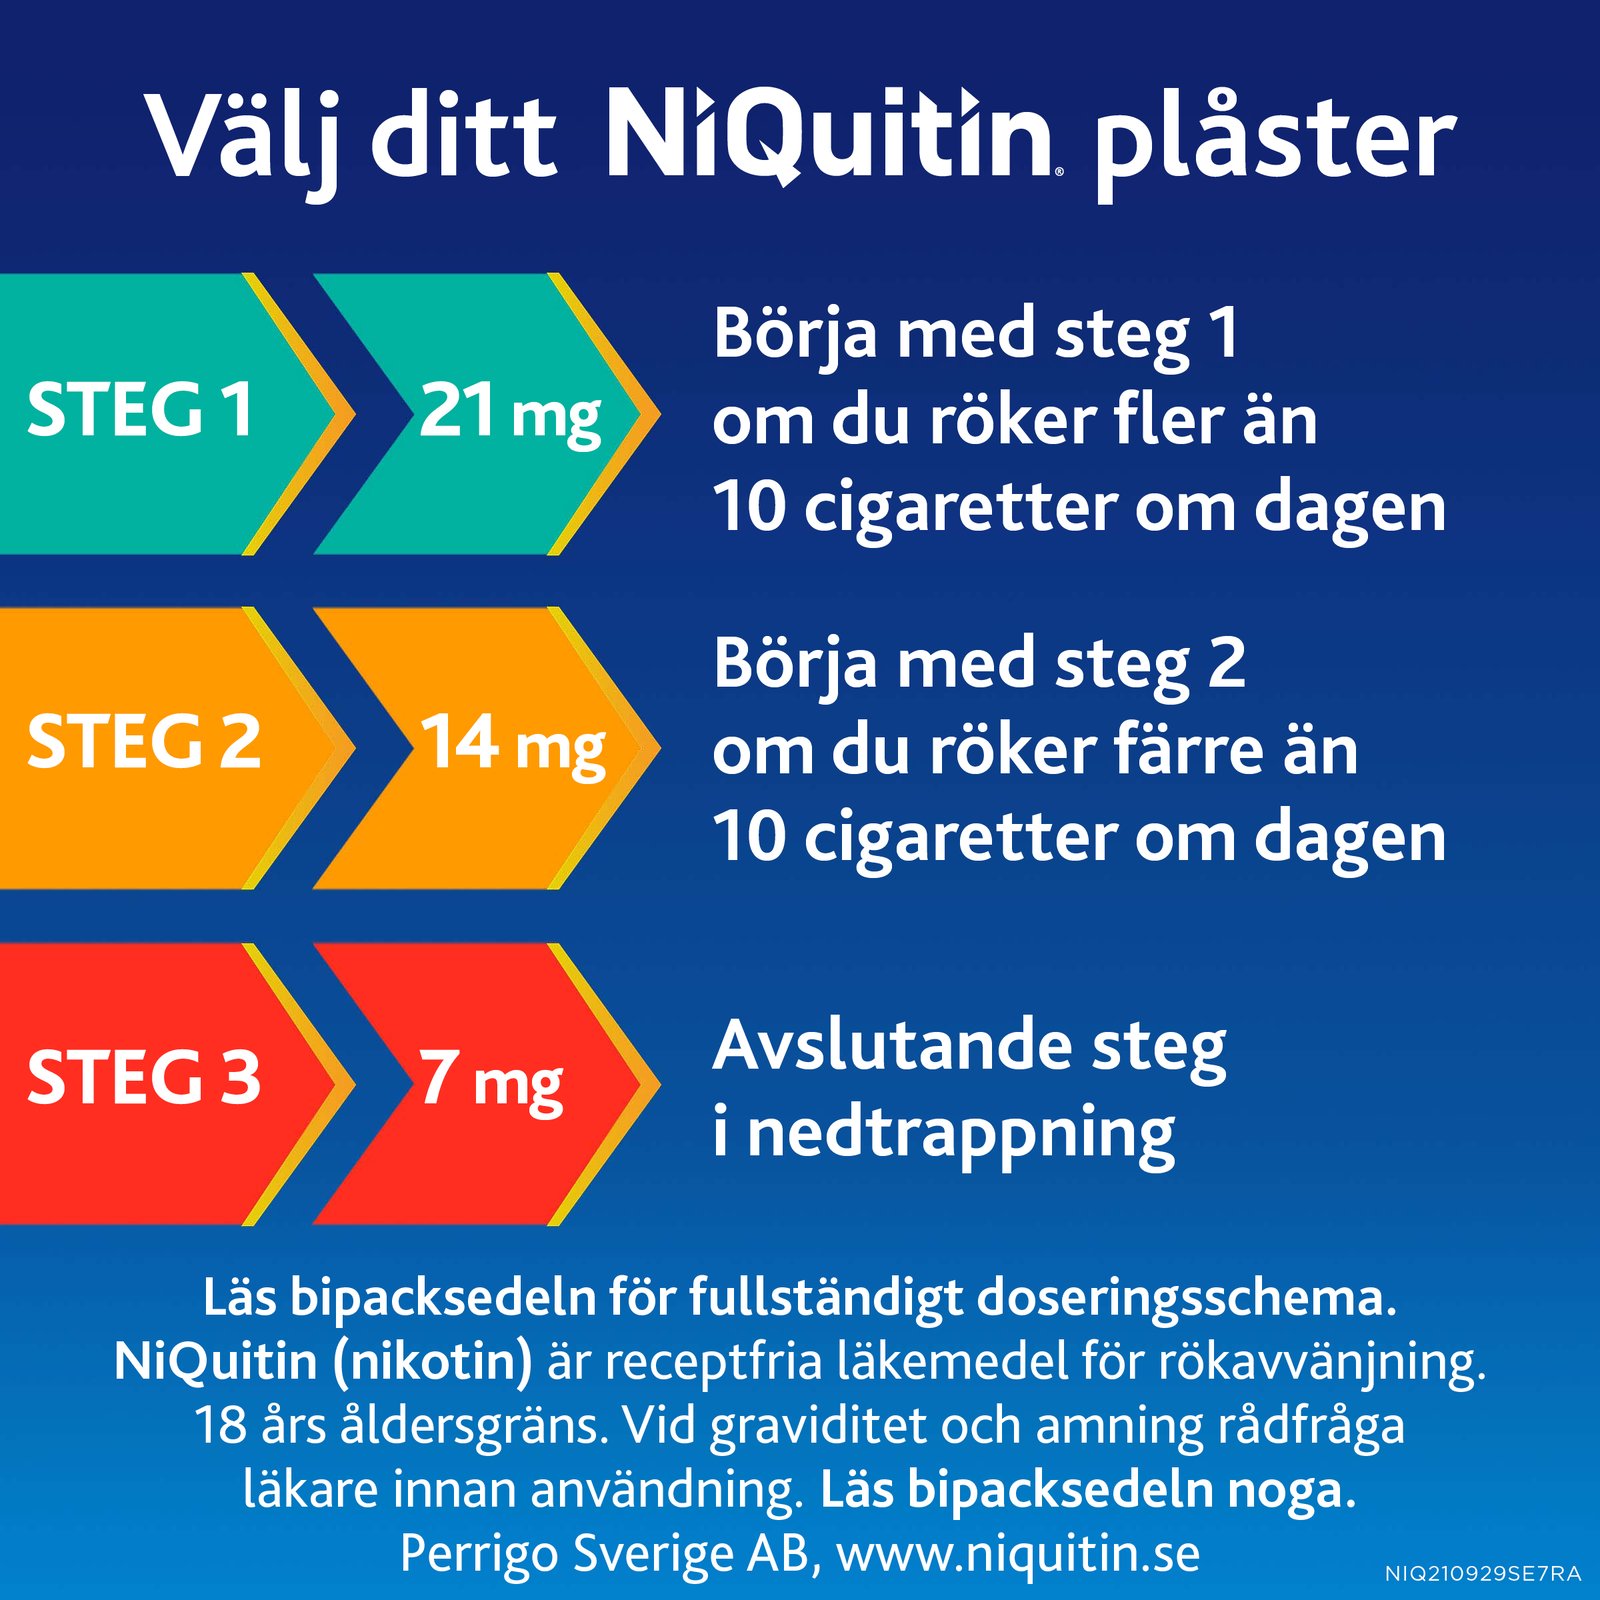 Niquitin Clear 21 mg / 24 timmar Depotplåster Nikotinplåster 7 st